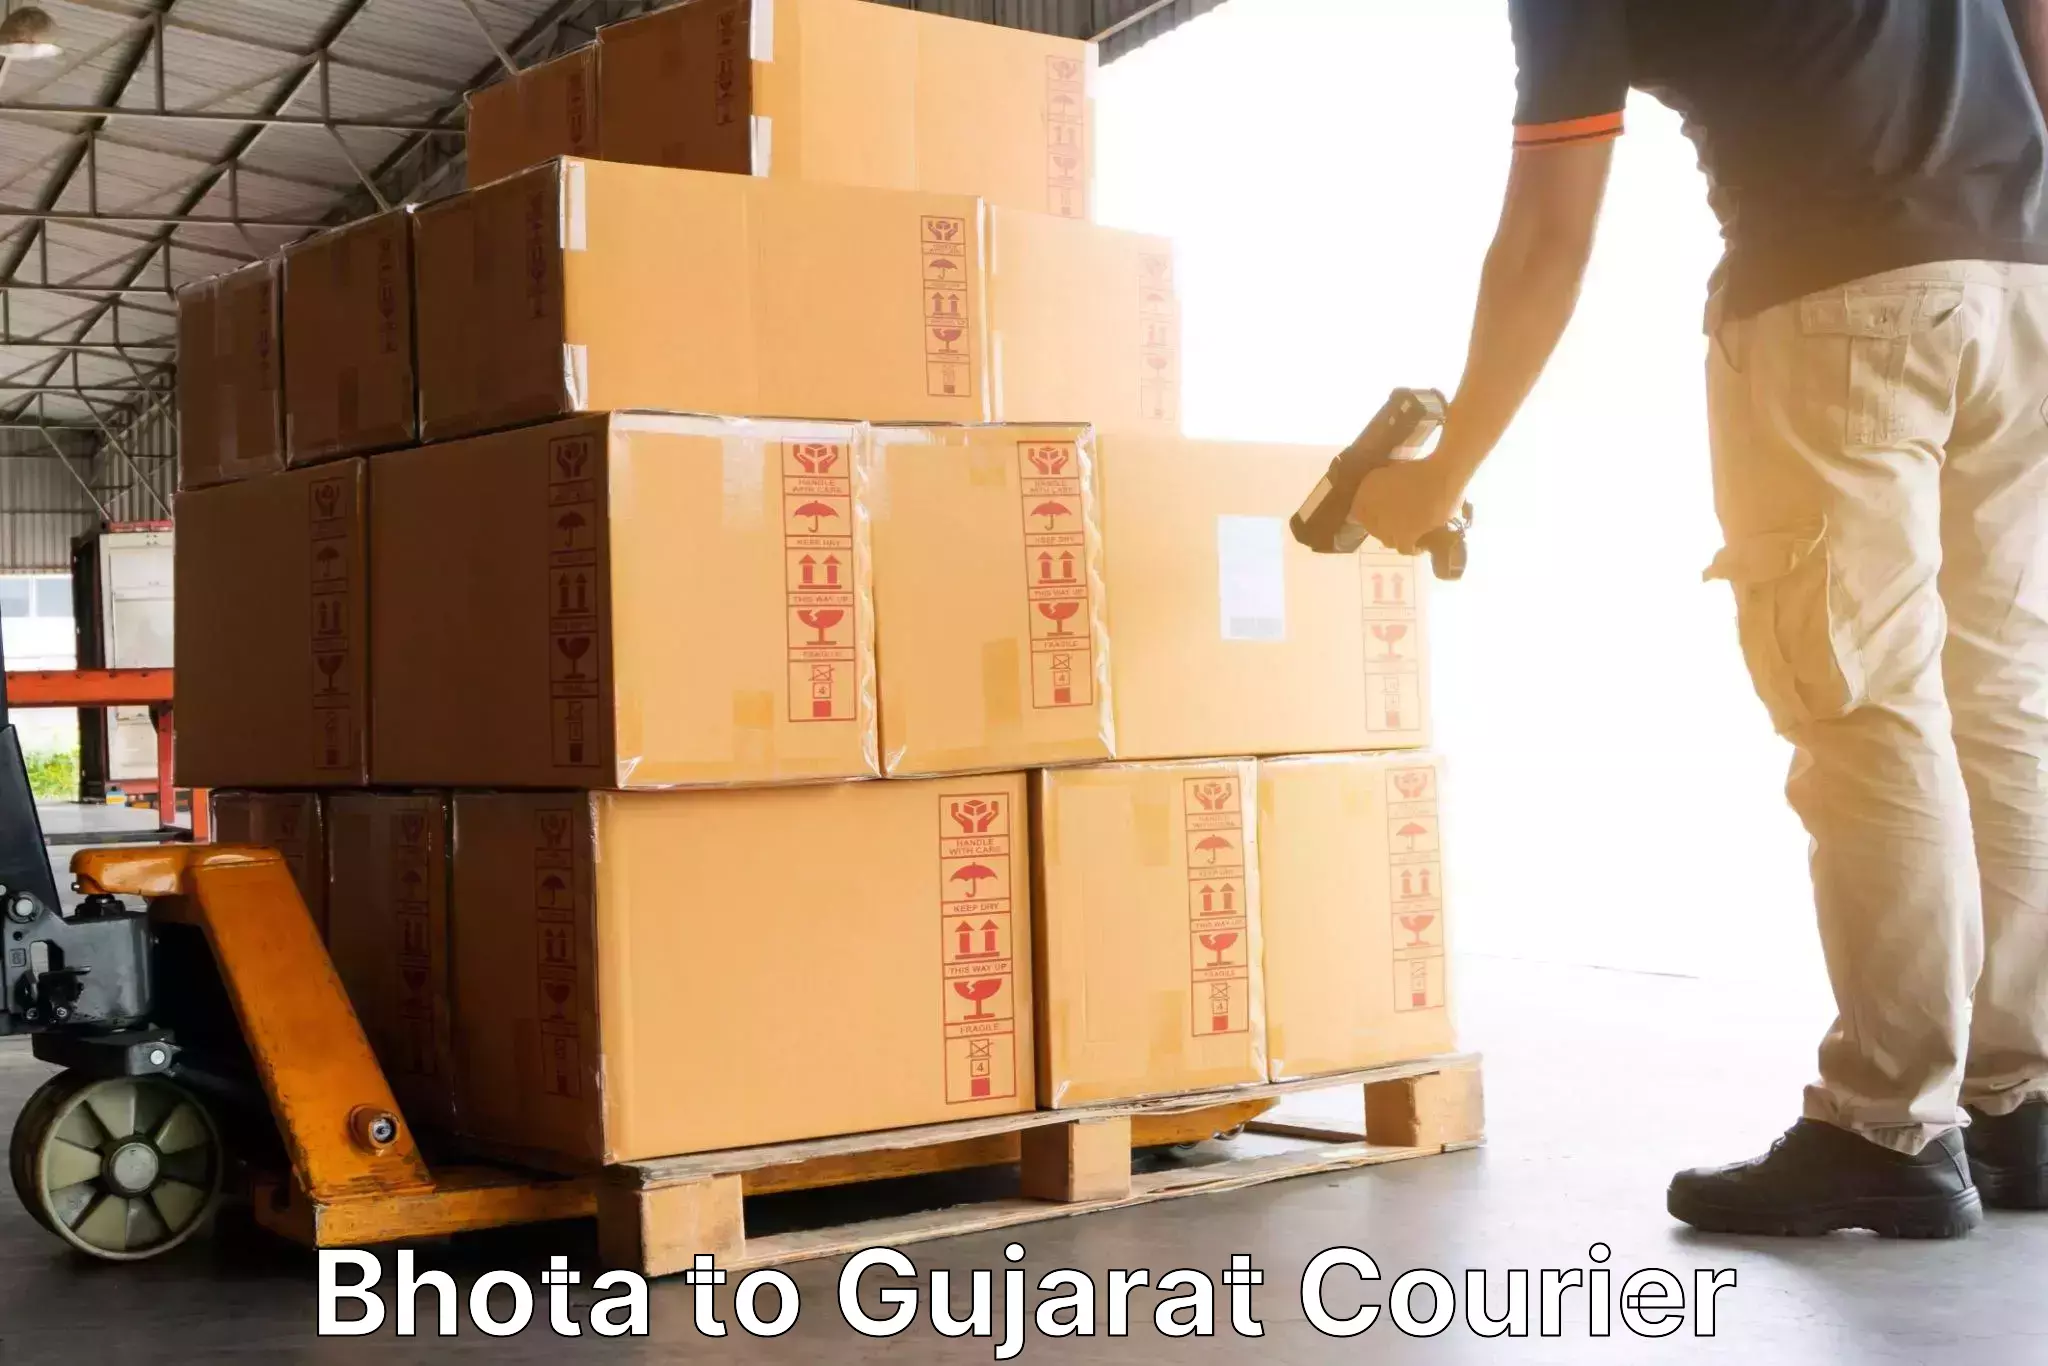 International parcel service Bhota to Dahej